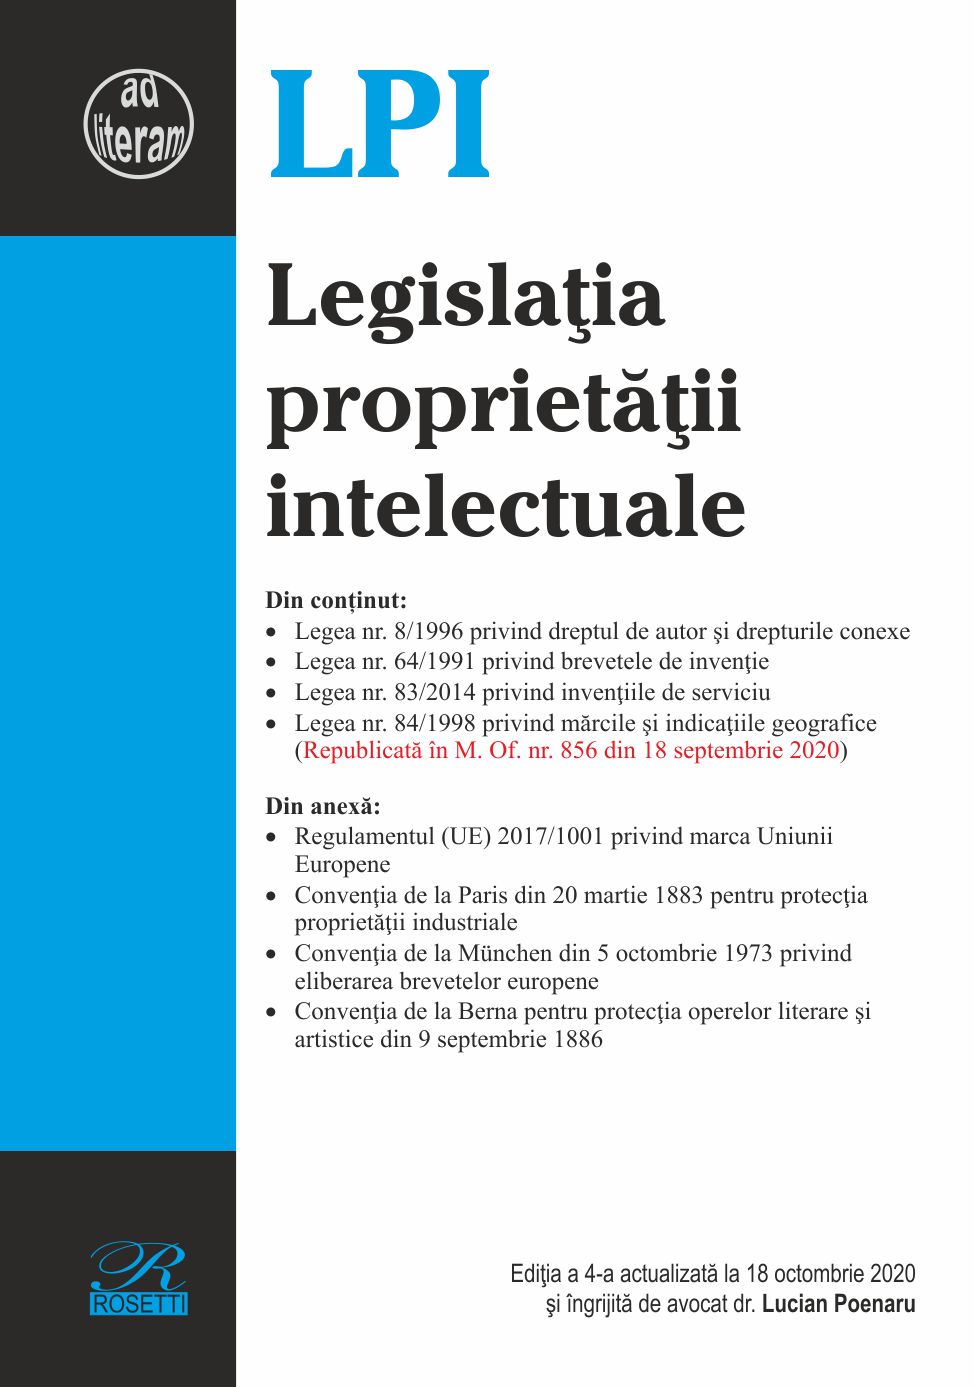 Legislatia proprietatii intelectuale. Editia a 4-a actualizata la 18 octombrie 2020 | Lucian Poenaru carturesti.ro imagine 2022